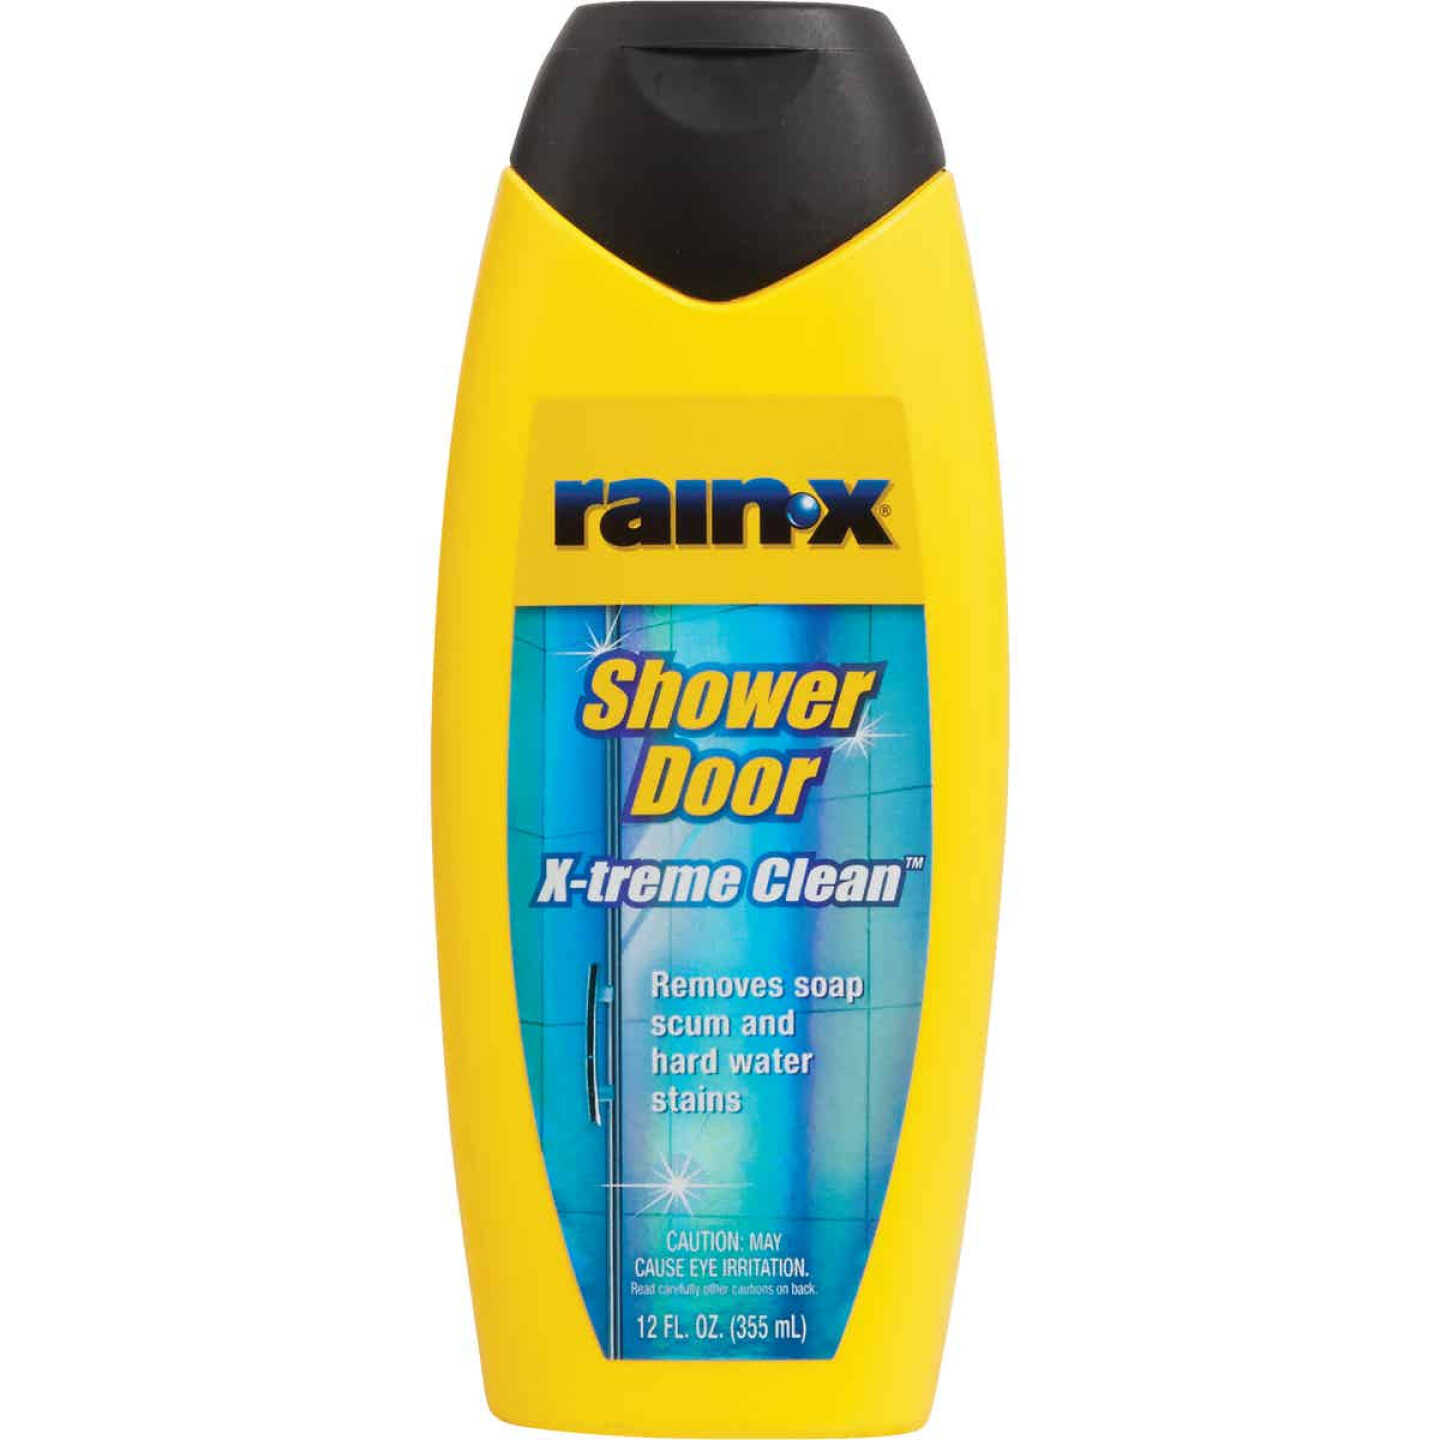  Rain-X 630035 X-Treme Clean Shower Door Cleaner, 12 Fl